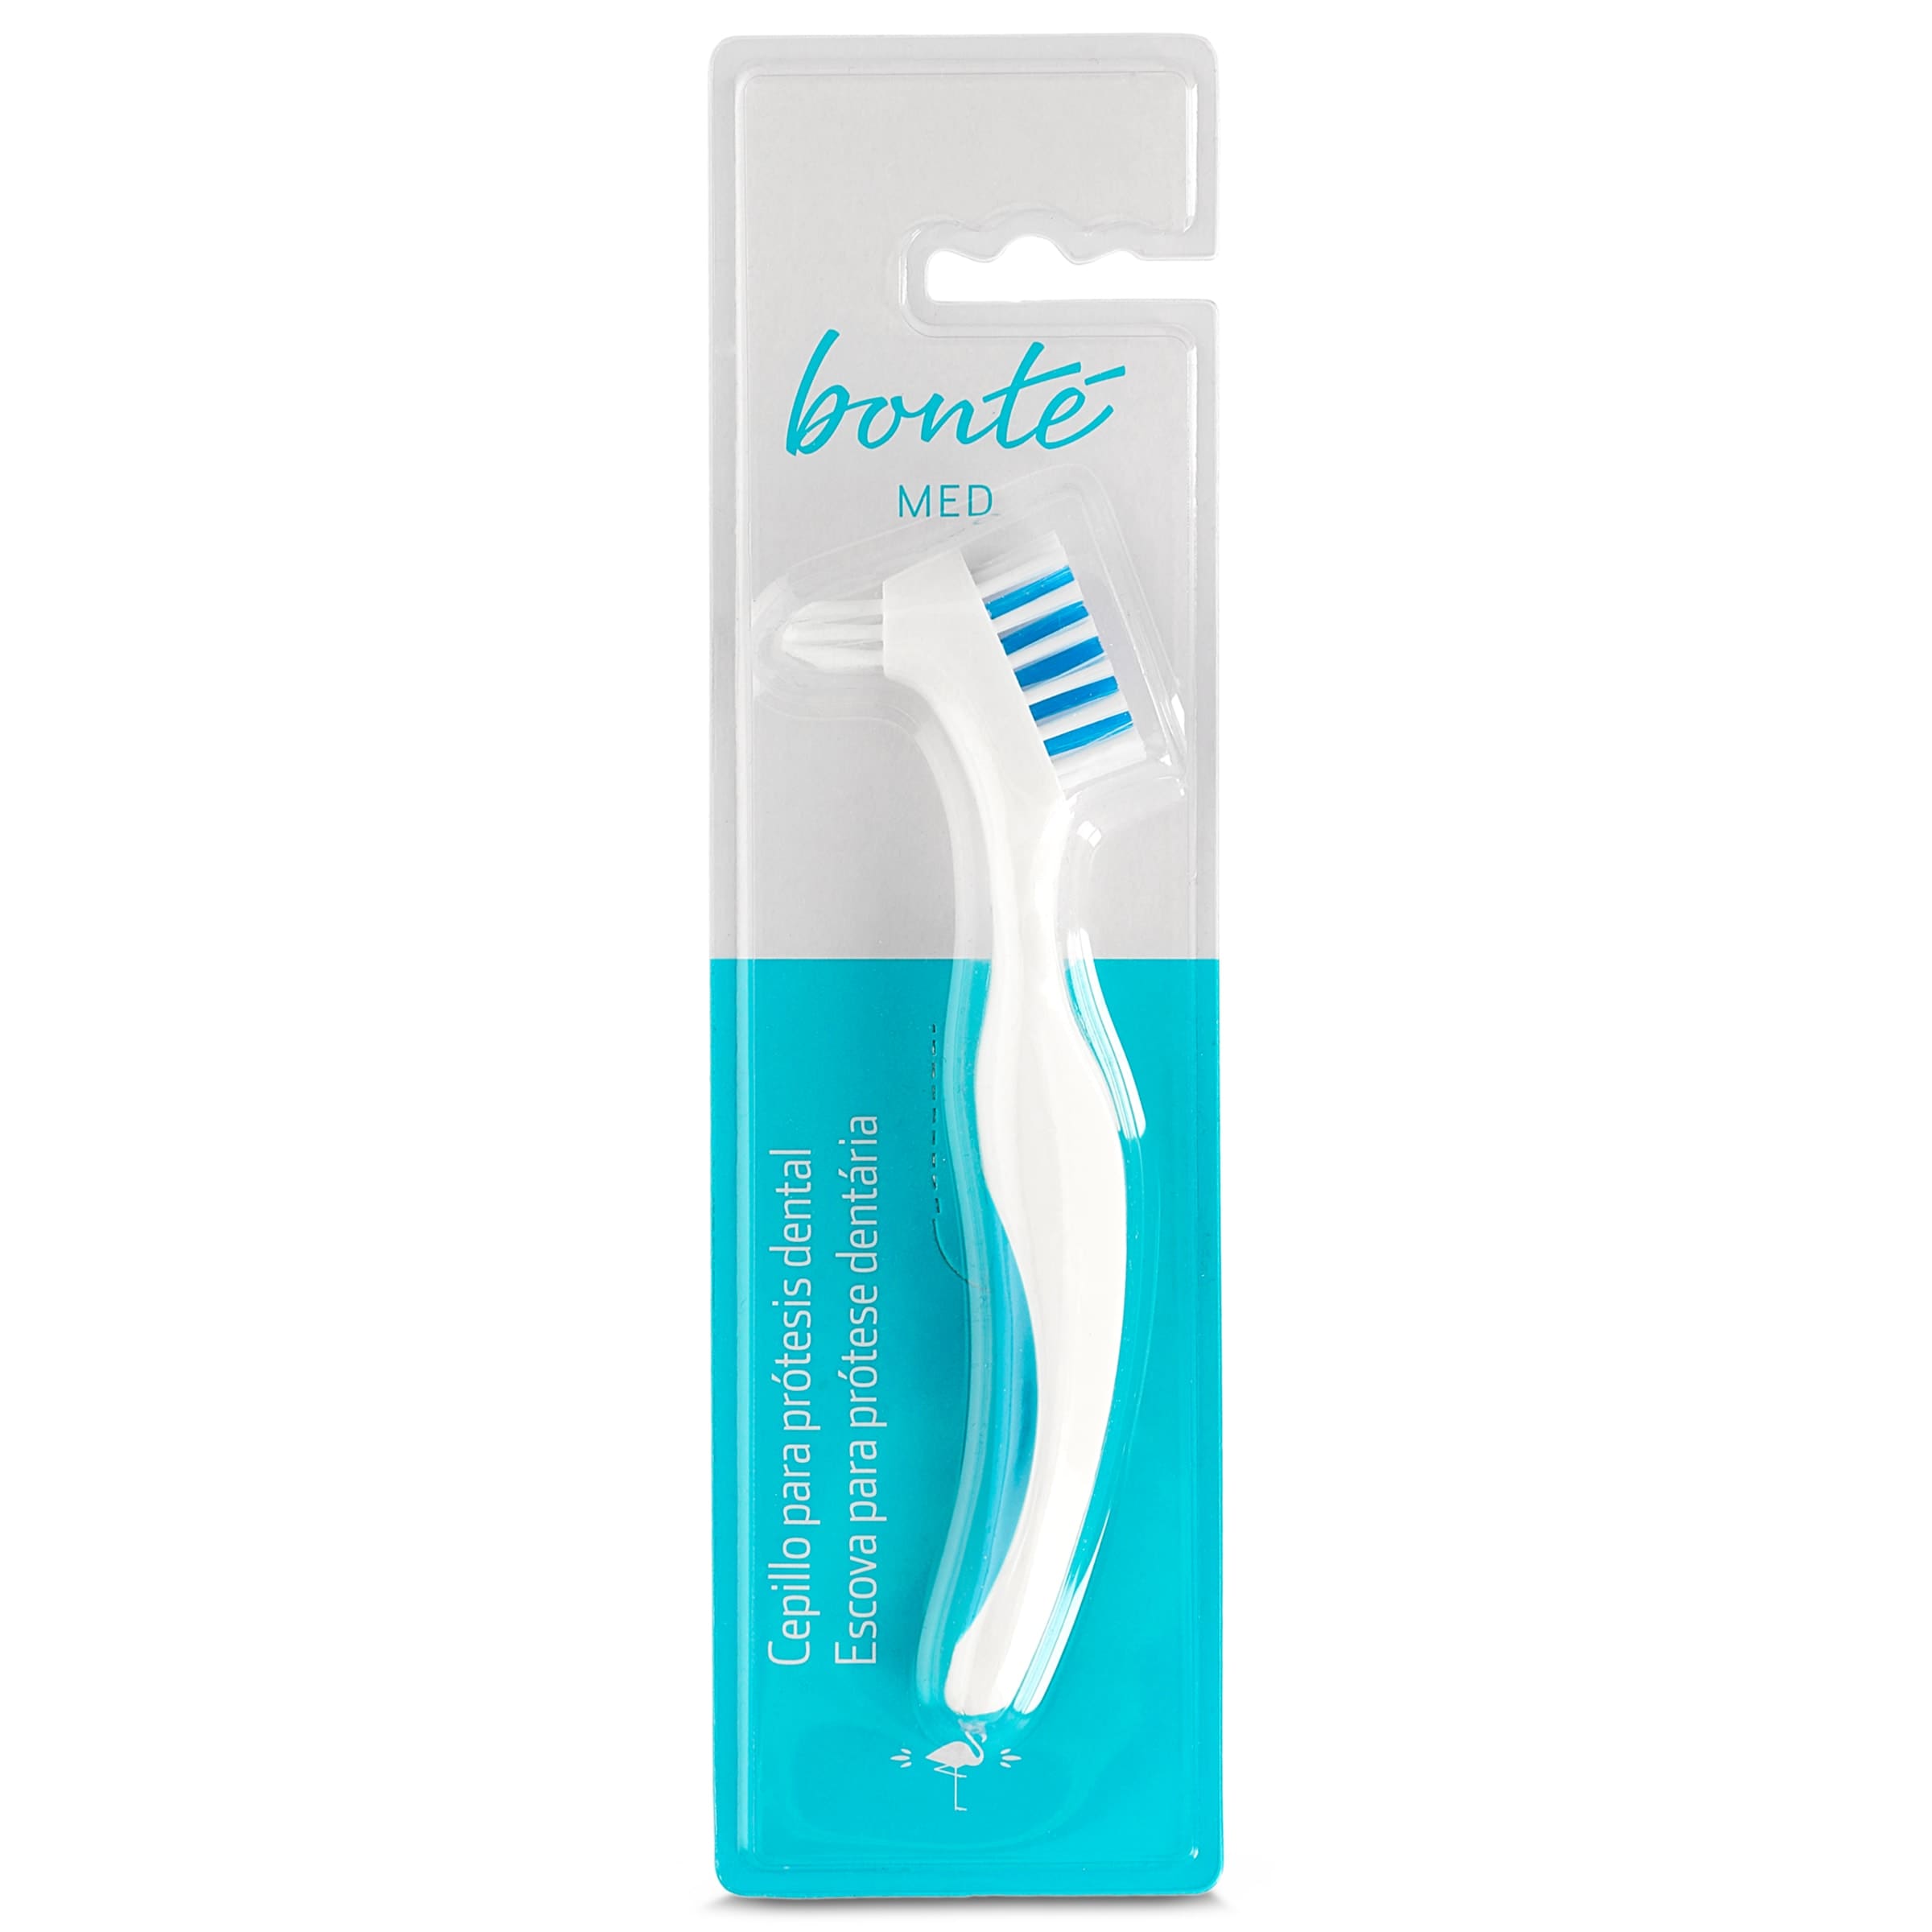 Cepillo dental especial para prótesis BONTE MED BLISTER 1 UD -  Supermercados DIA